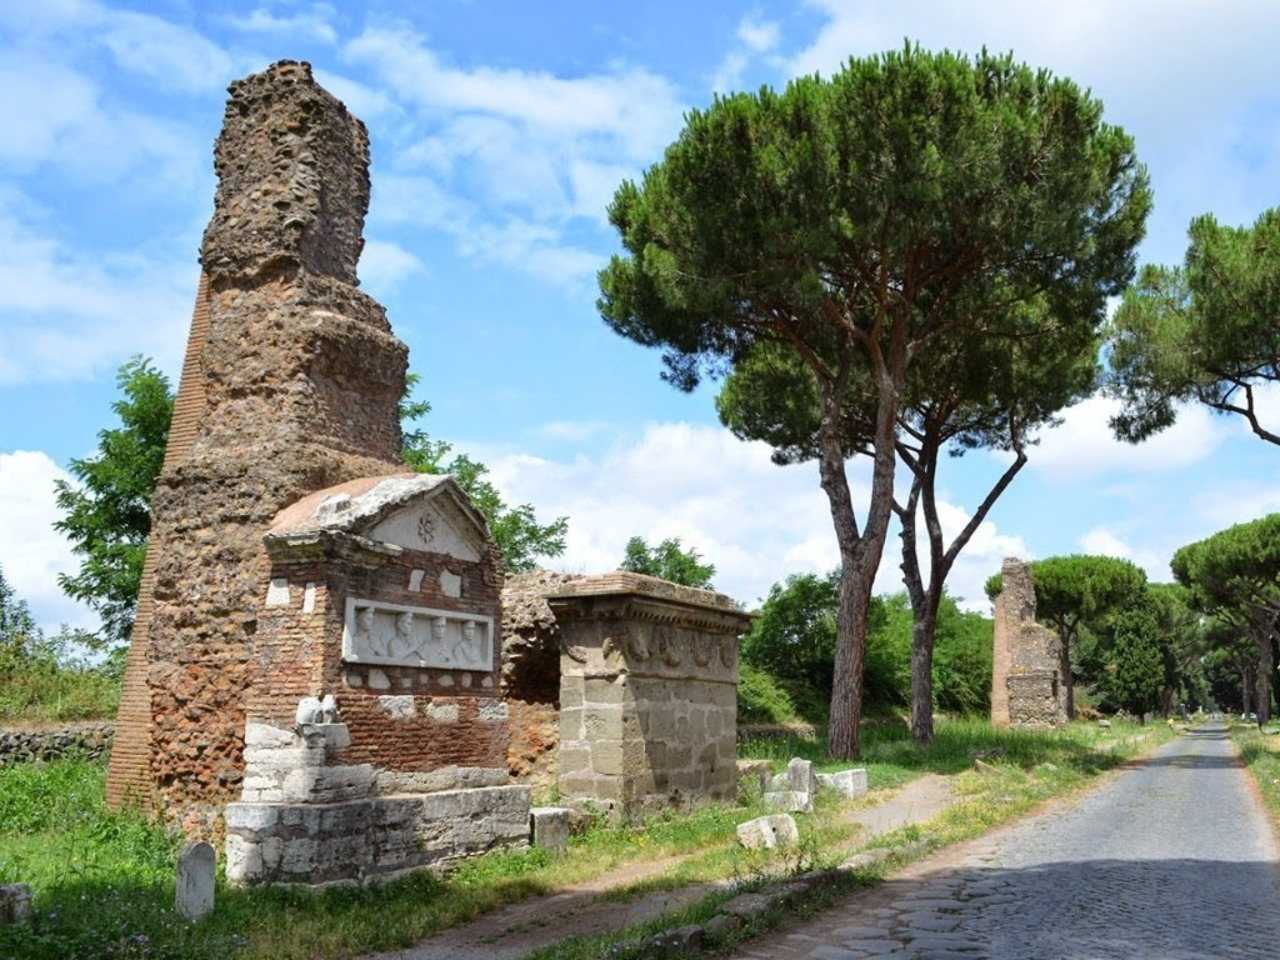 Нетуристический Рим: уникальная Appia Antica | Цена 300€, отзывы, описание экскурсии